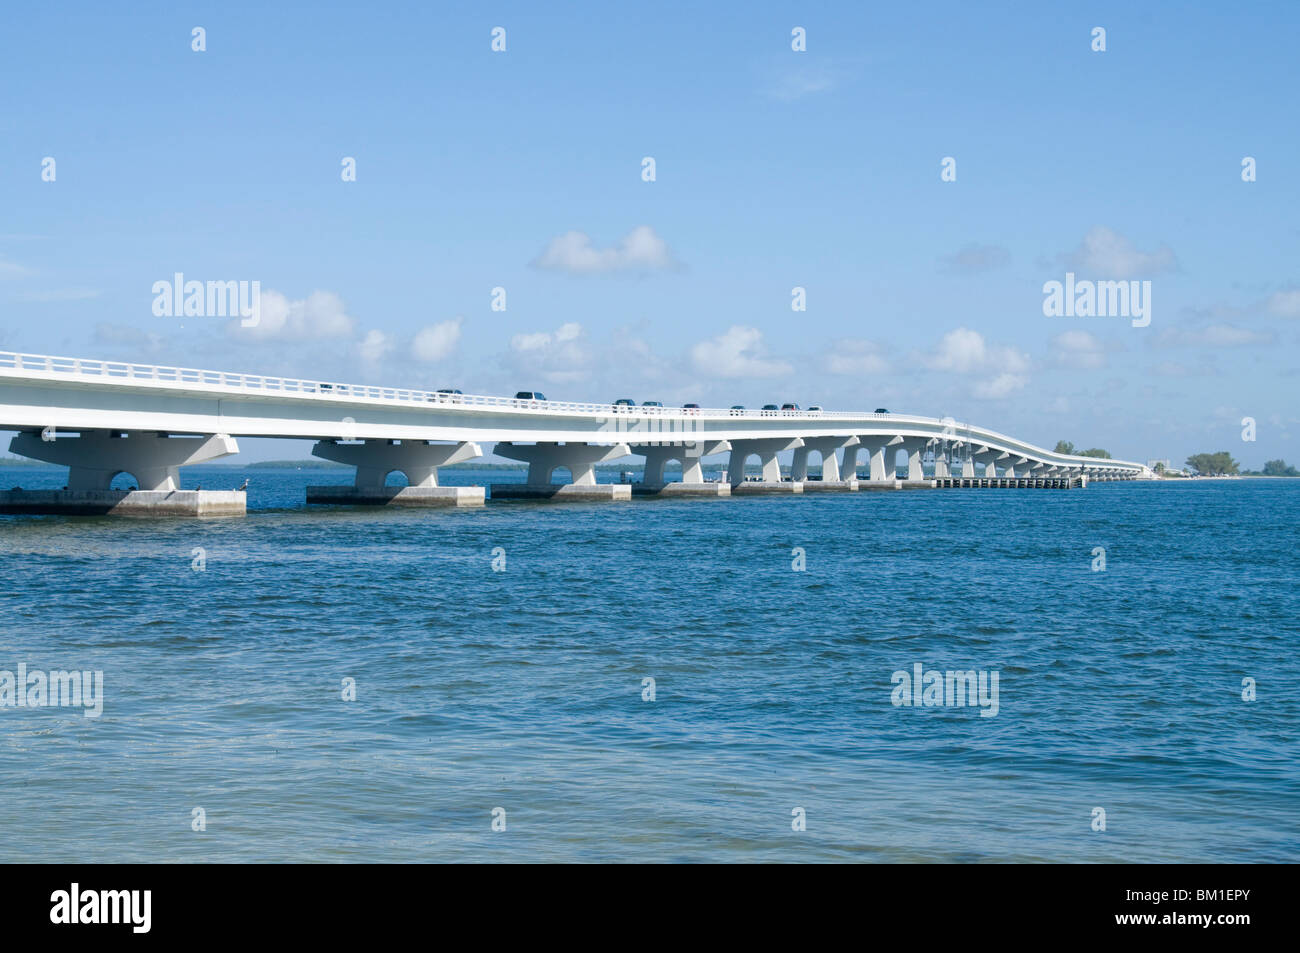 Pont reliant l'île de Sanibel au continent, la Côte du Golfe, Floride, États-Unis d'Amérique, Amérique du Nord Banque D'Images